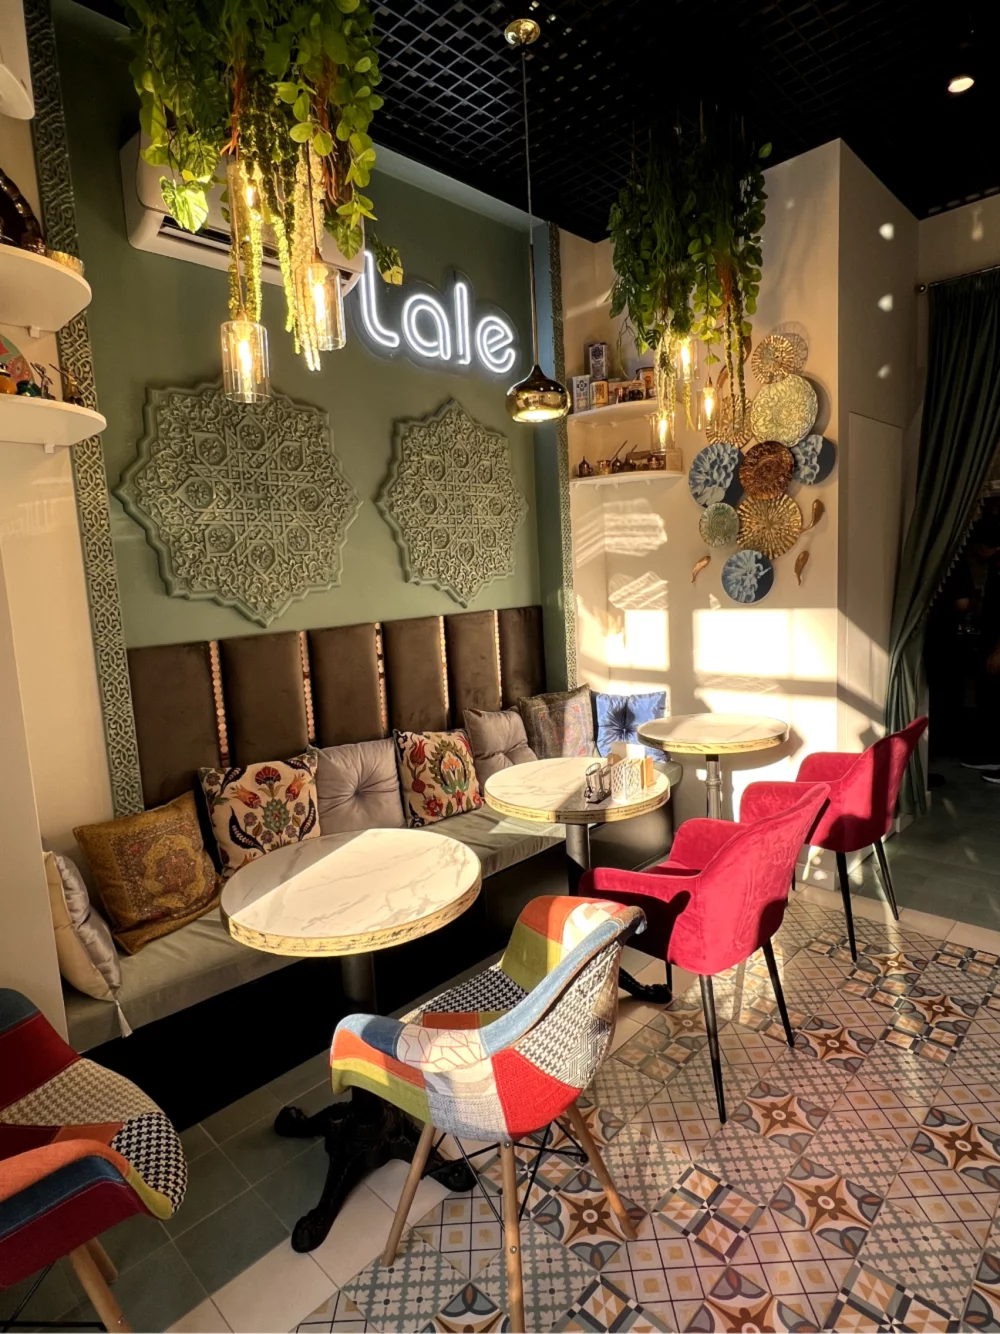 Интерьер/Экстерьер/Банкетная зона/Бар/Стол для двоих/Вход/Главный зал/Lounge зона кафе Lale Istanbul cafe фото